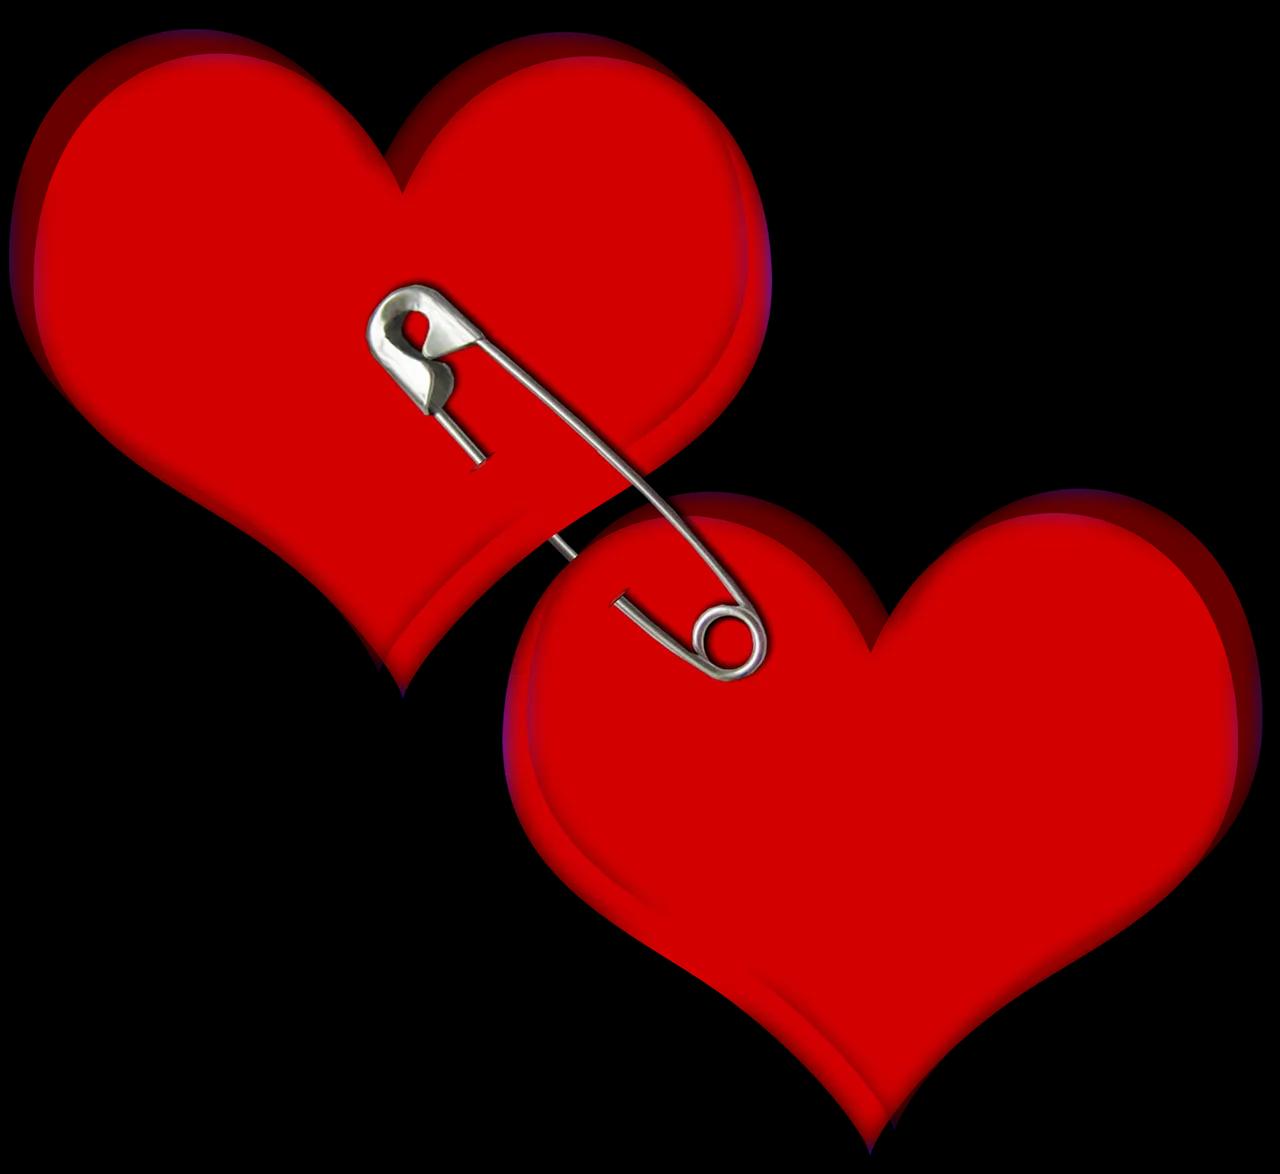 Corazón Amor Rojo - Imagen gratis en Pixabay - Pixabay